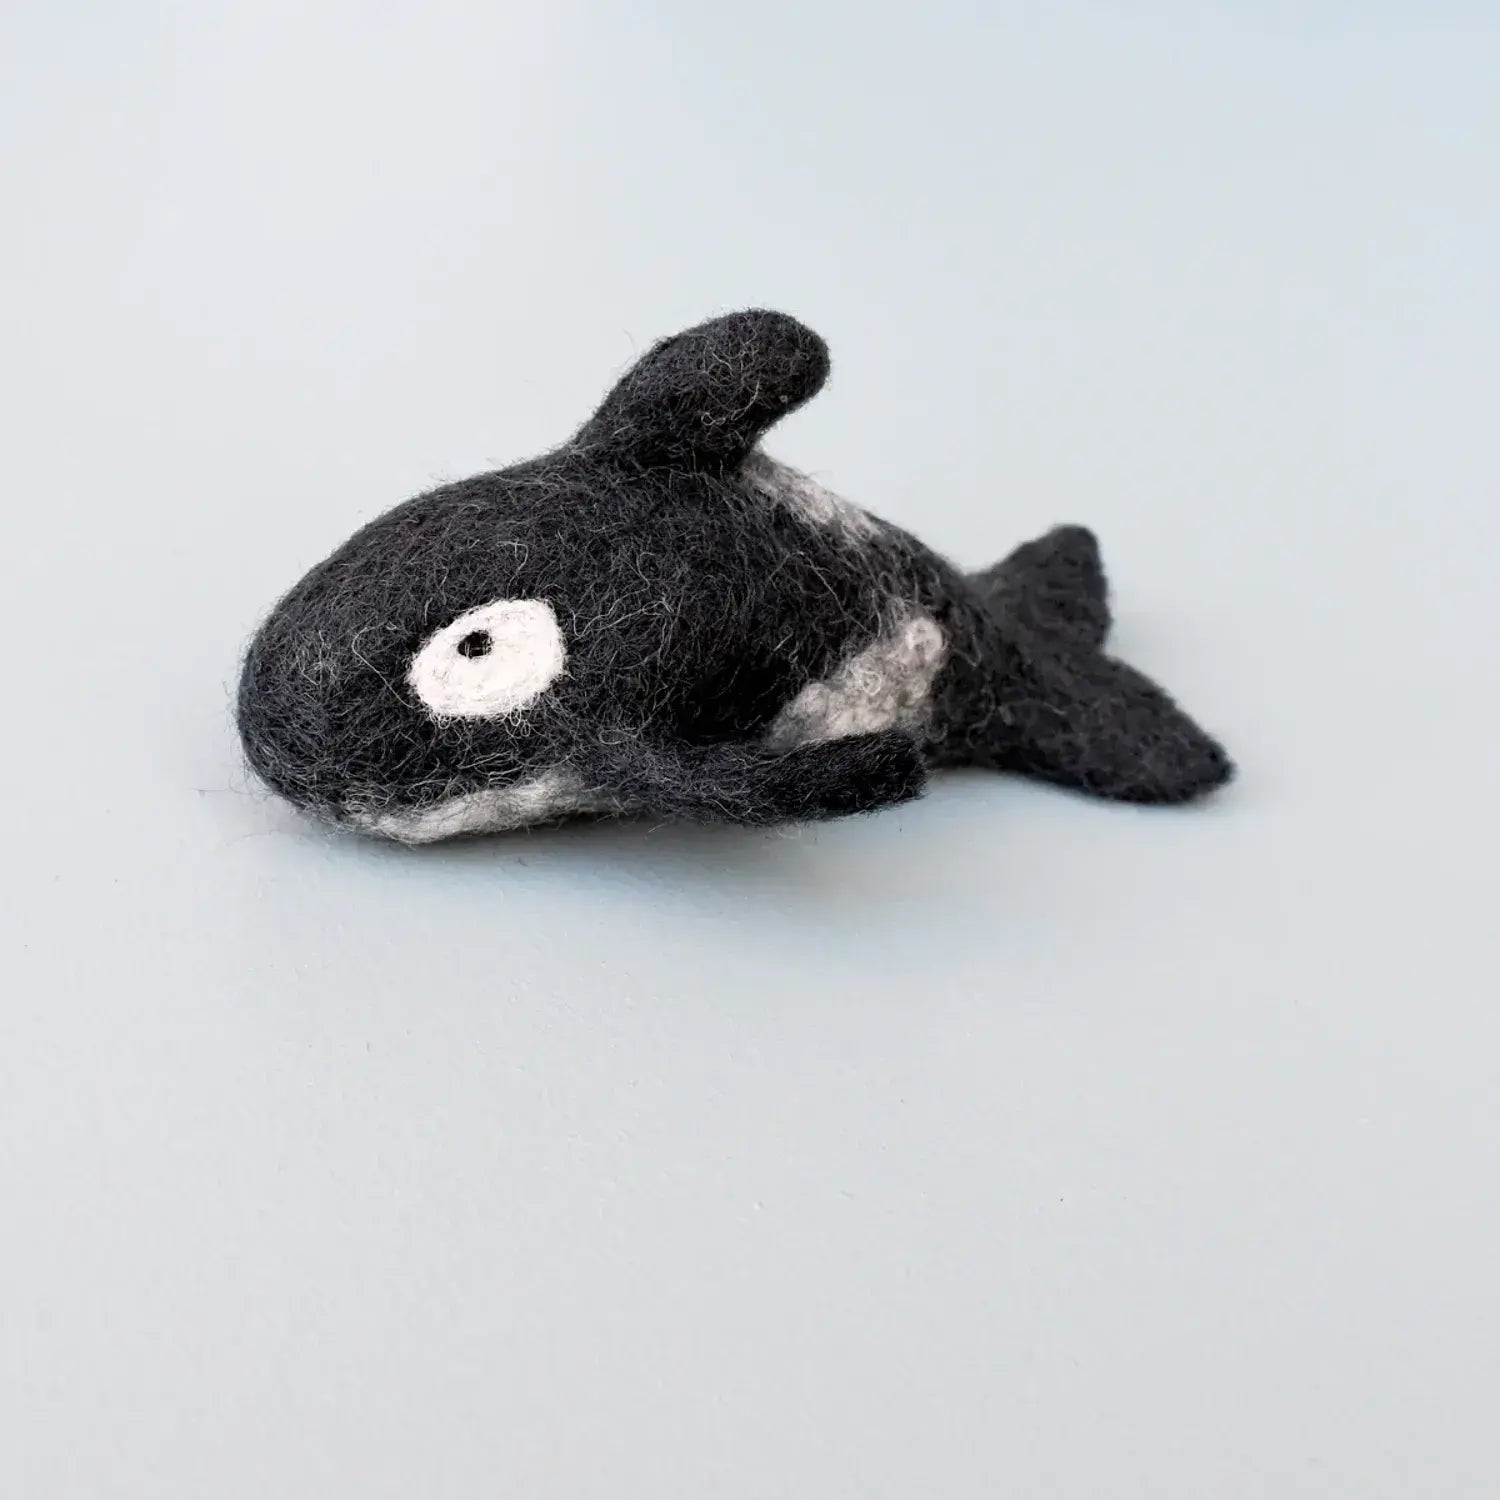 Felt Orca Killer Whale Toy by Tara Treasures